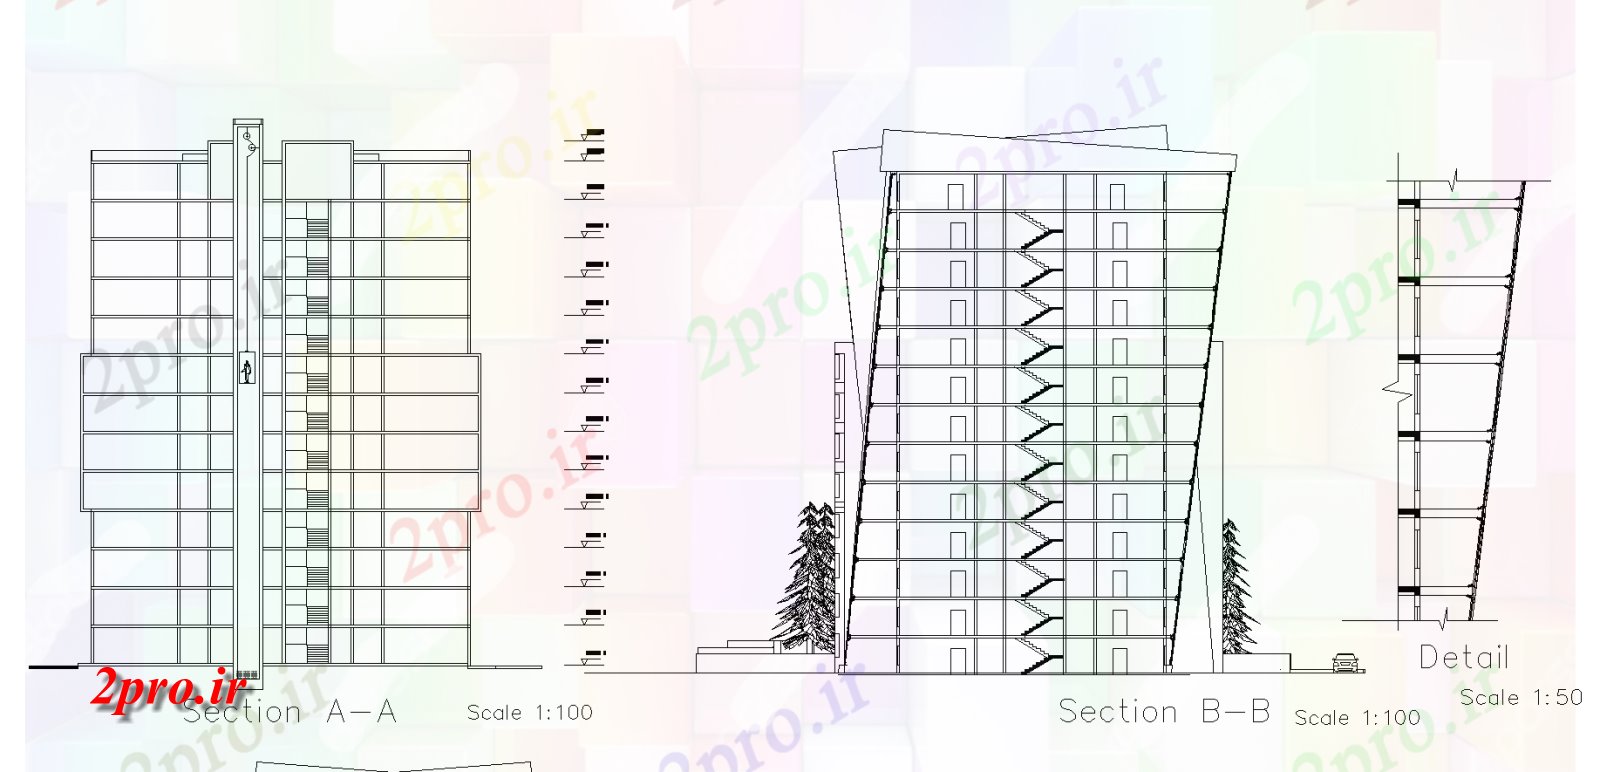 دانلود نقشه ساختمان مرتفعبخش های بلند طرحی ساختمان جزئیات، 28 در 29 متر (کد74991)